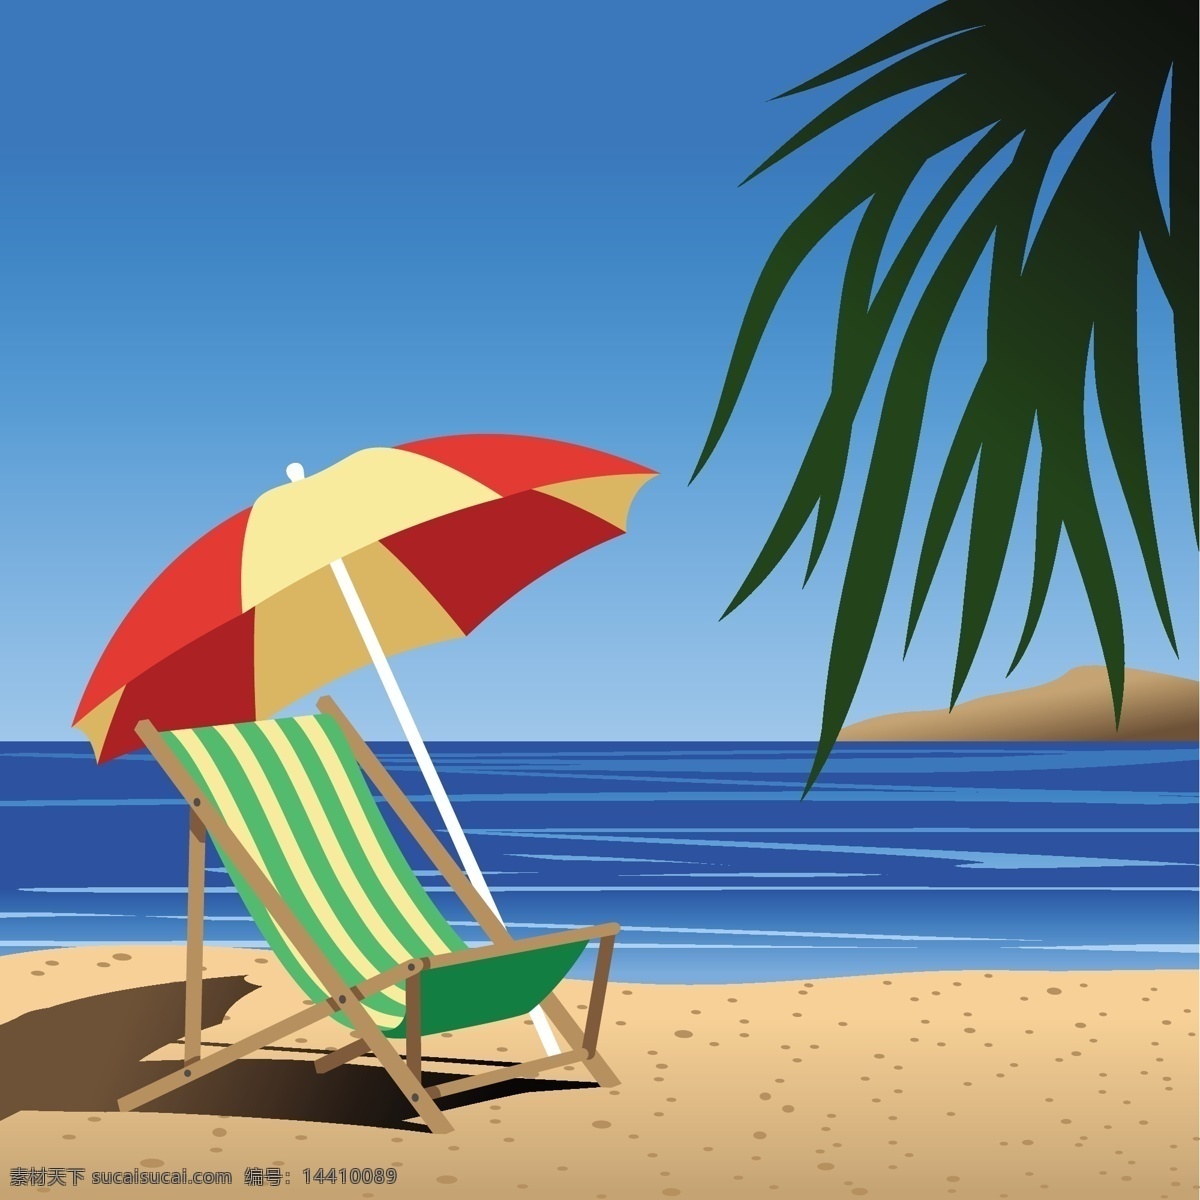 夏日 美丽 悠闲 海滨 风光 矢量 大海 海边风光 海滩 沙滩 沙滩椅 矢量风景 矢量图 树叶 夏天 遮阳伞 其他矢量图